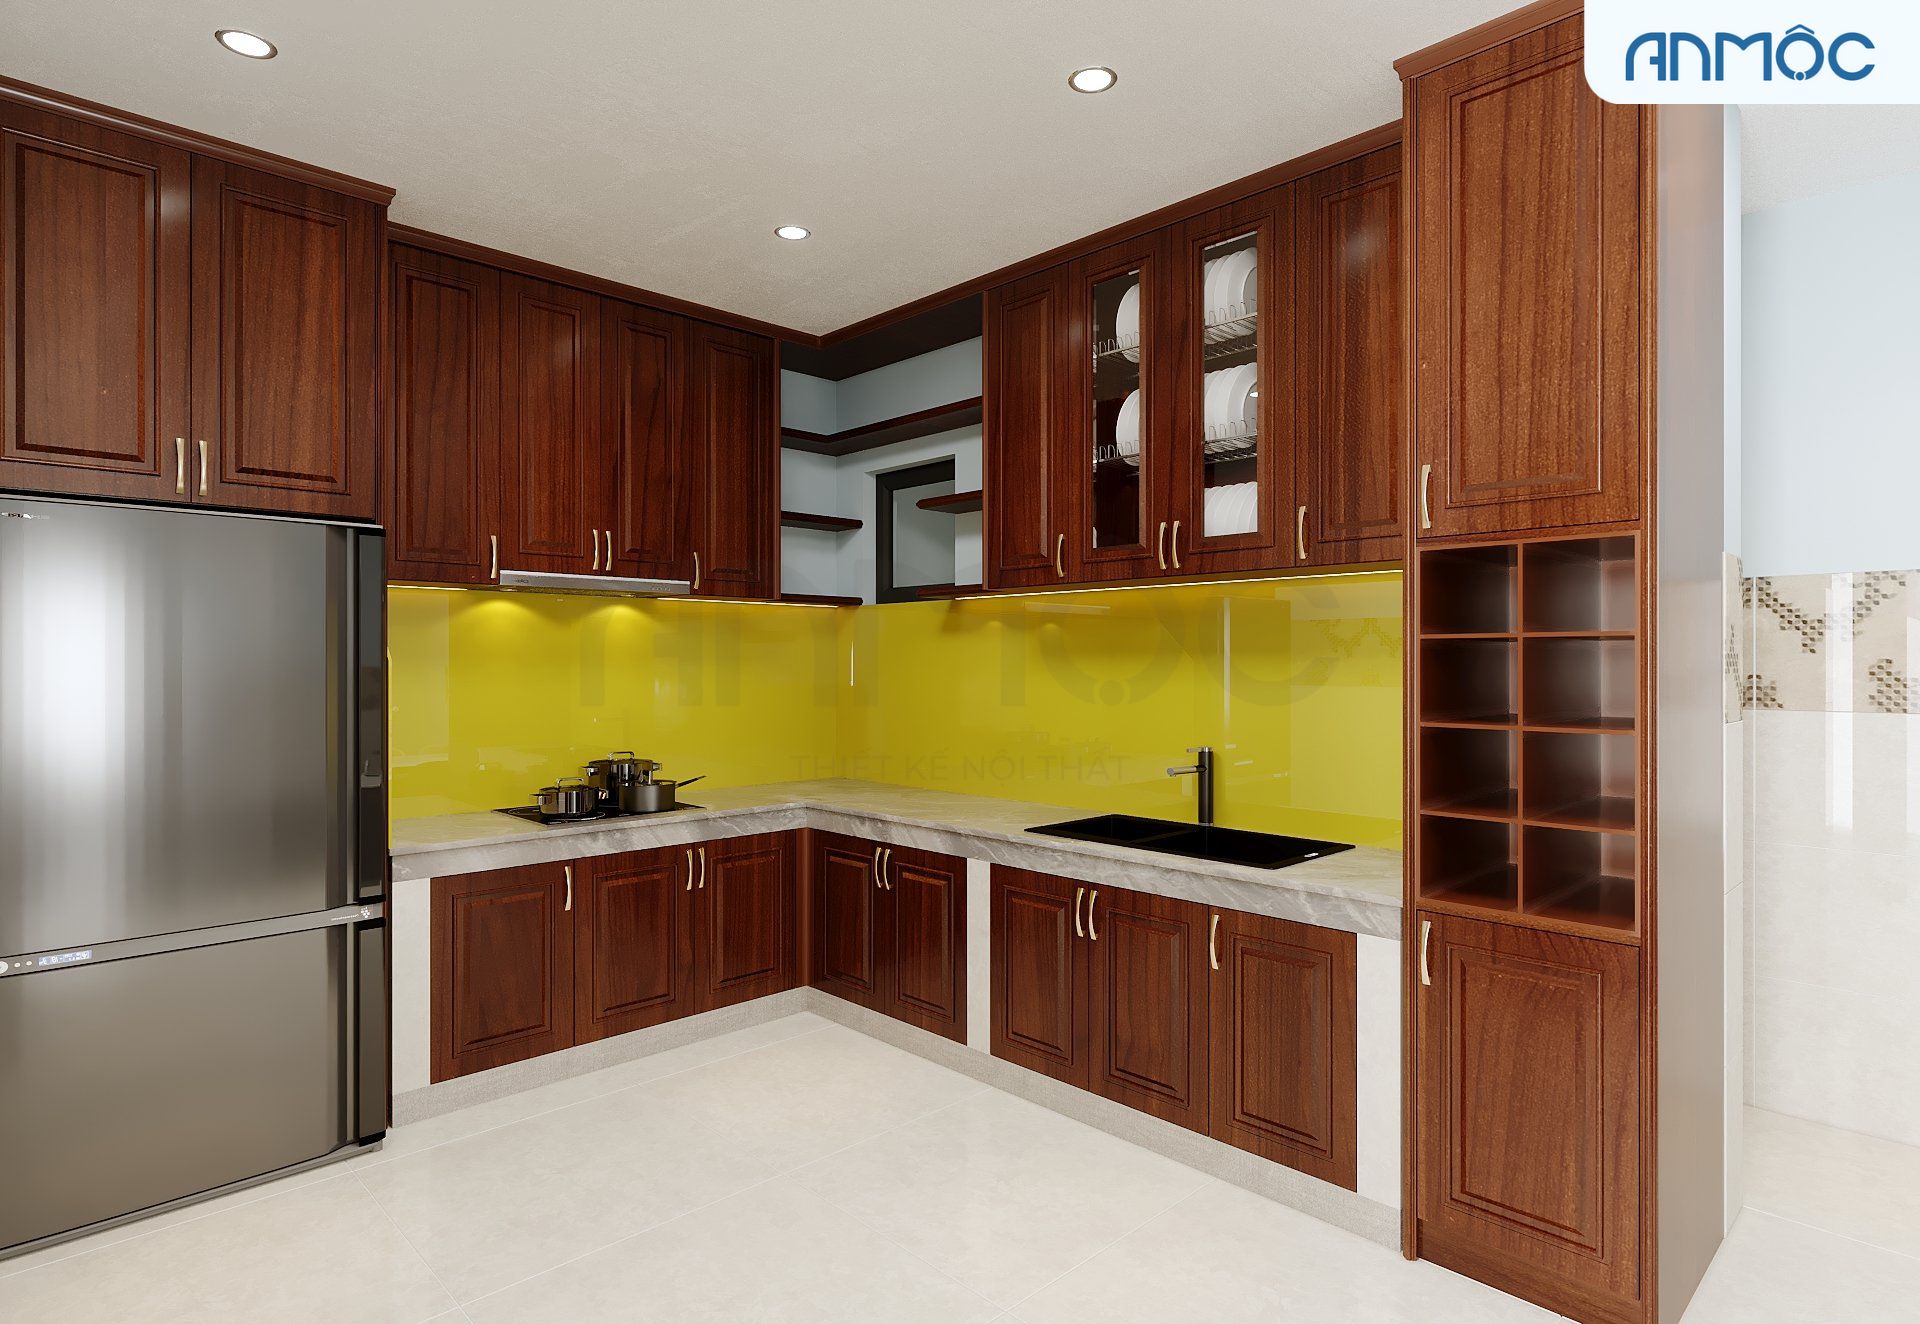 Mặt bếp được phủ đá nhập khẩu cao cấp tạo sự sang trọng và kính cường lực màu vàng ốp tường bếp làm điểm nhấn cho không gia bếp thêm nổi bật.